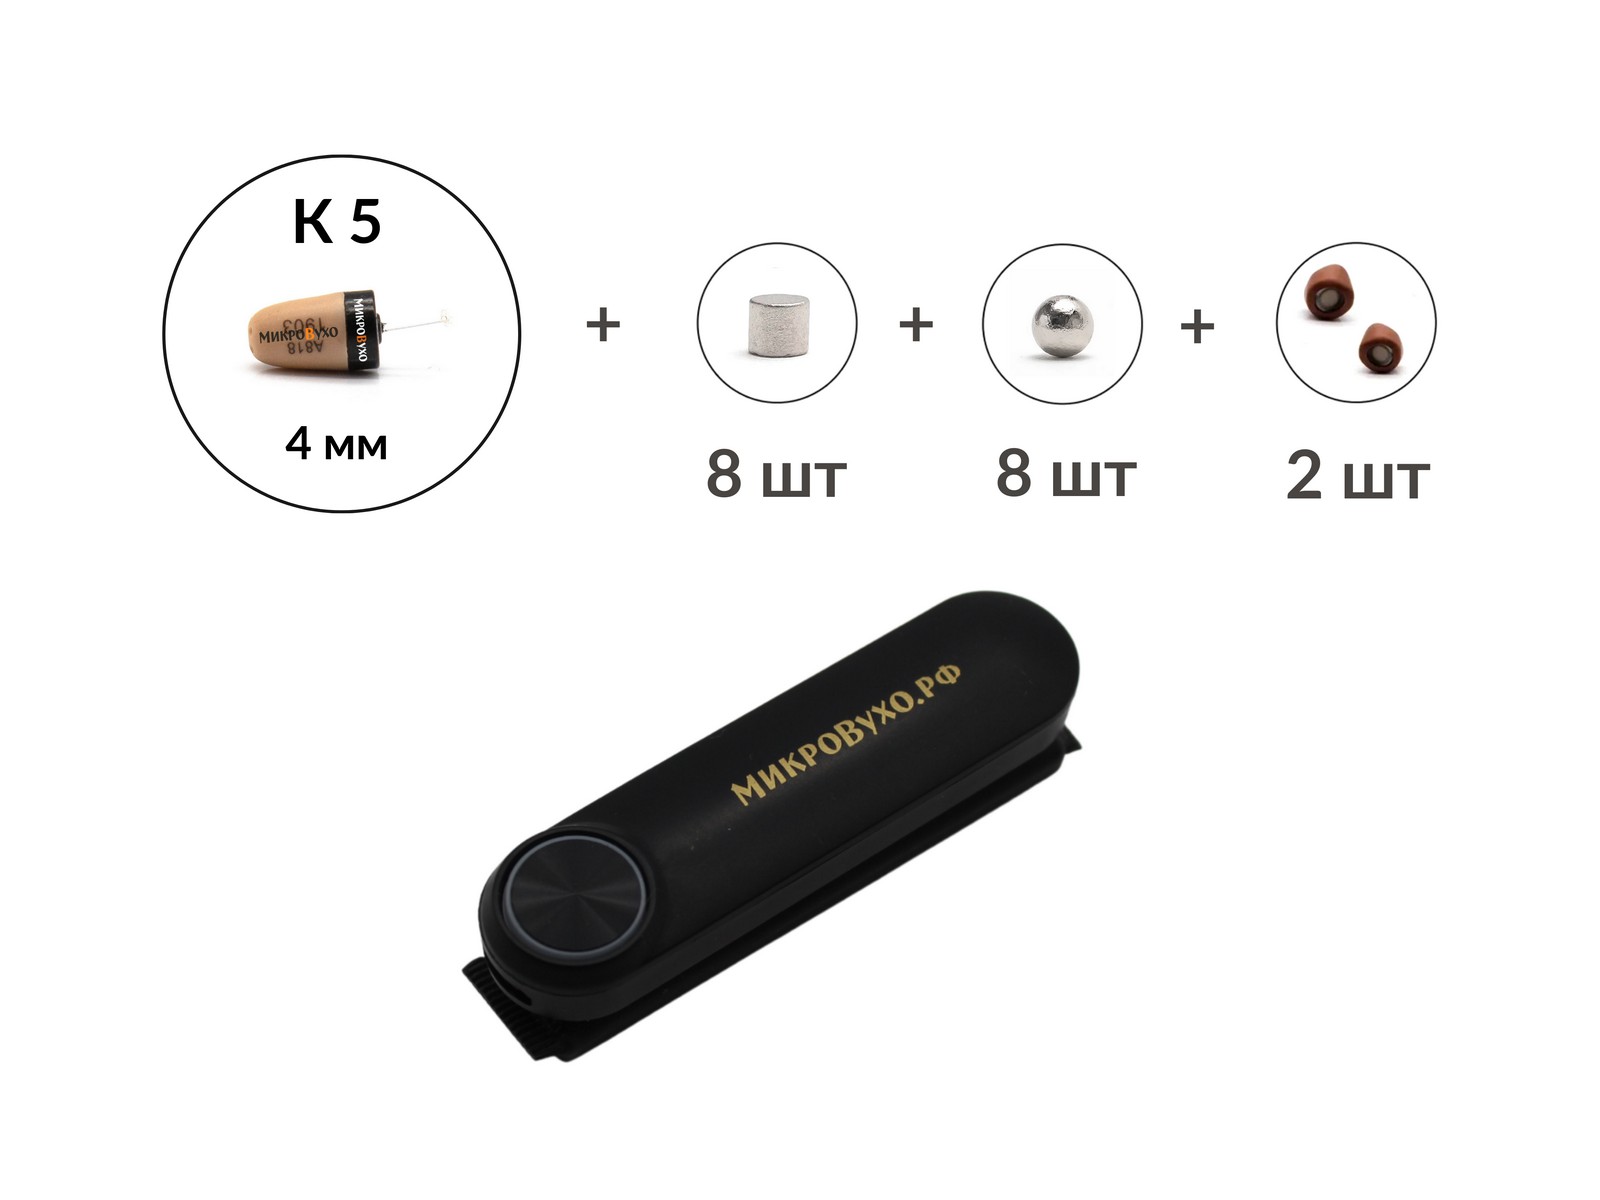 Универсальная гарнитура Bluetooth Box Standard Plus с капсулой К5 4 мм и магнитами 2 мм - изображение